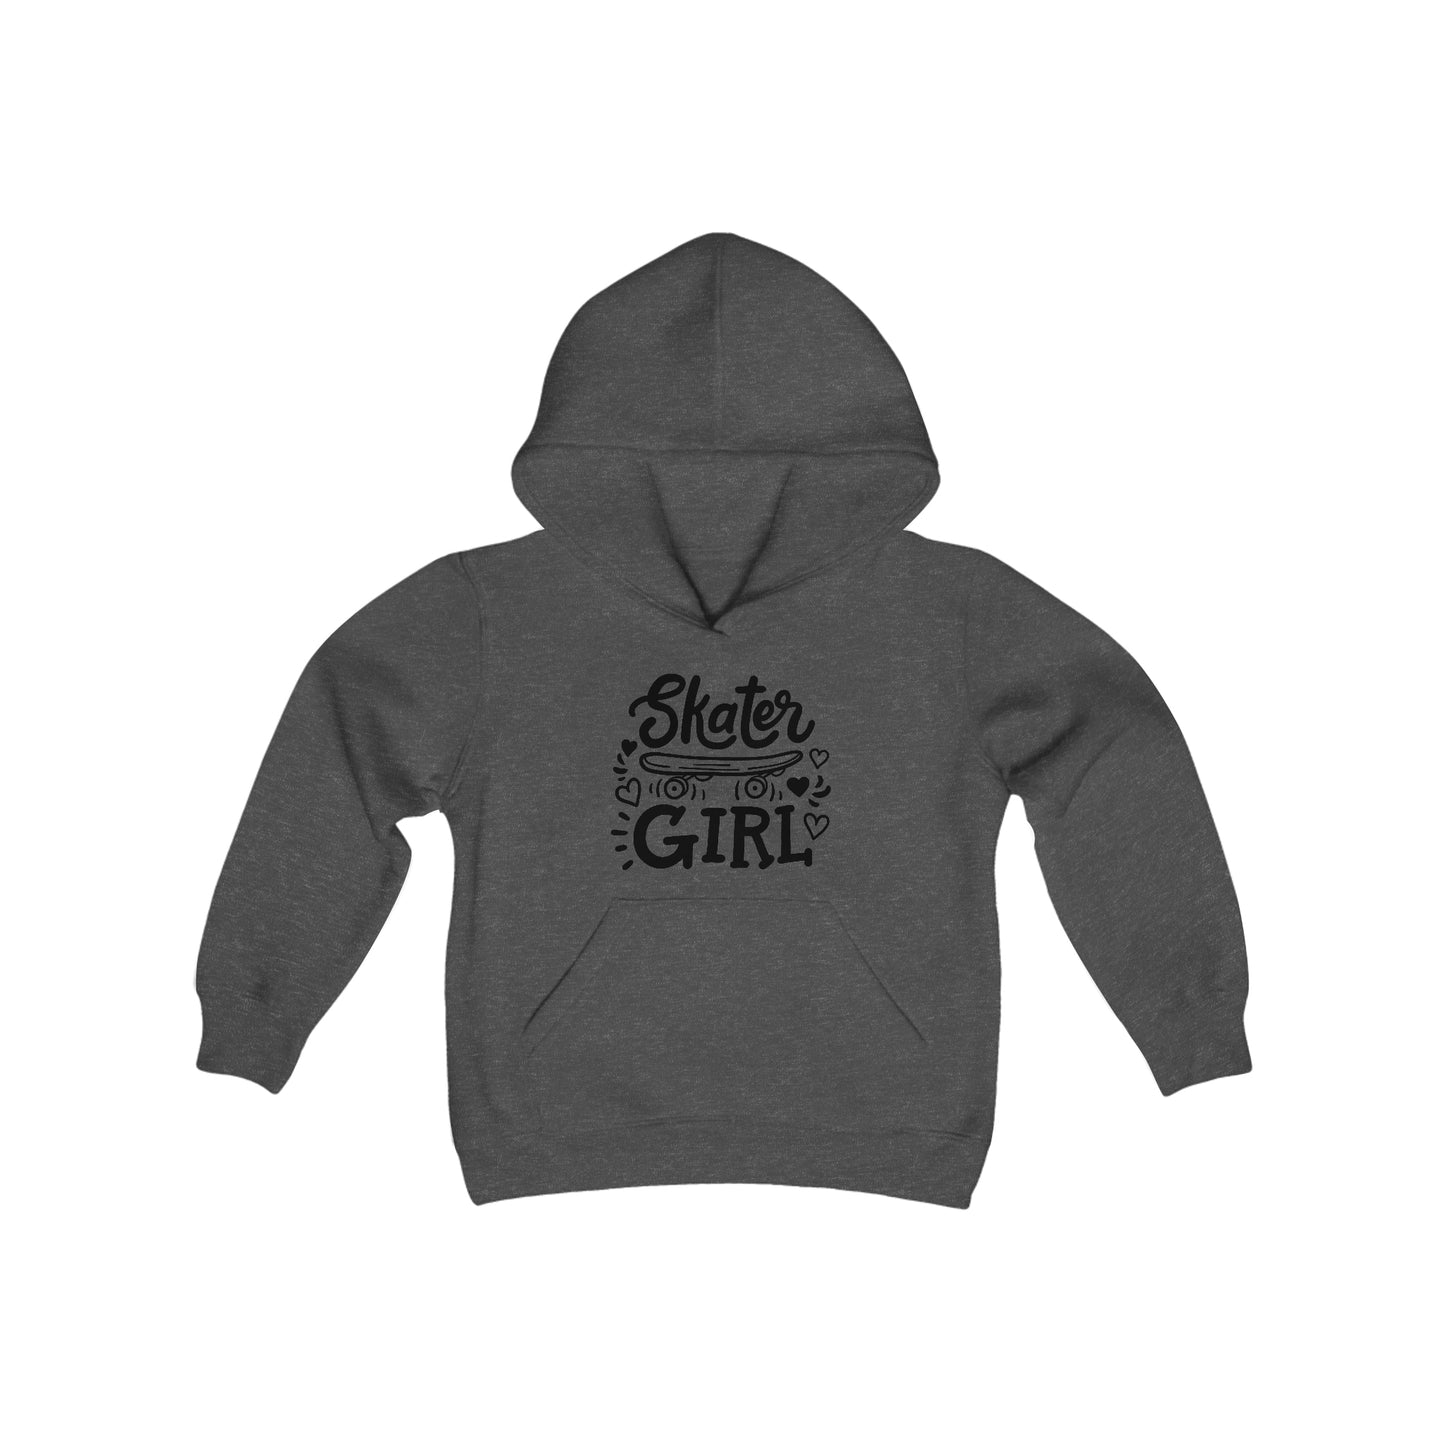 Skater Girl - Skateboard - Youth Heavy Blend Hooded Sweatshirt